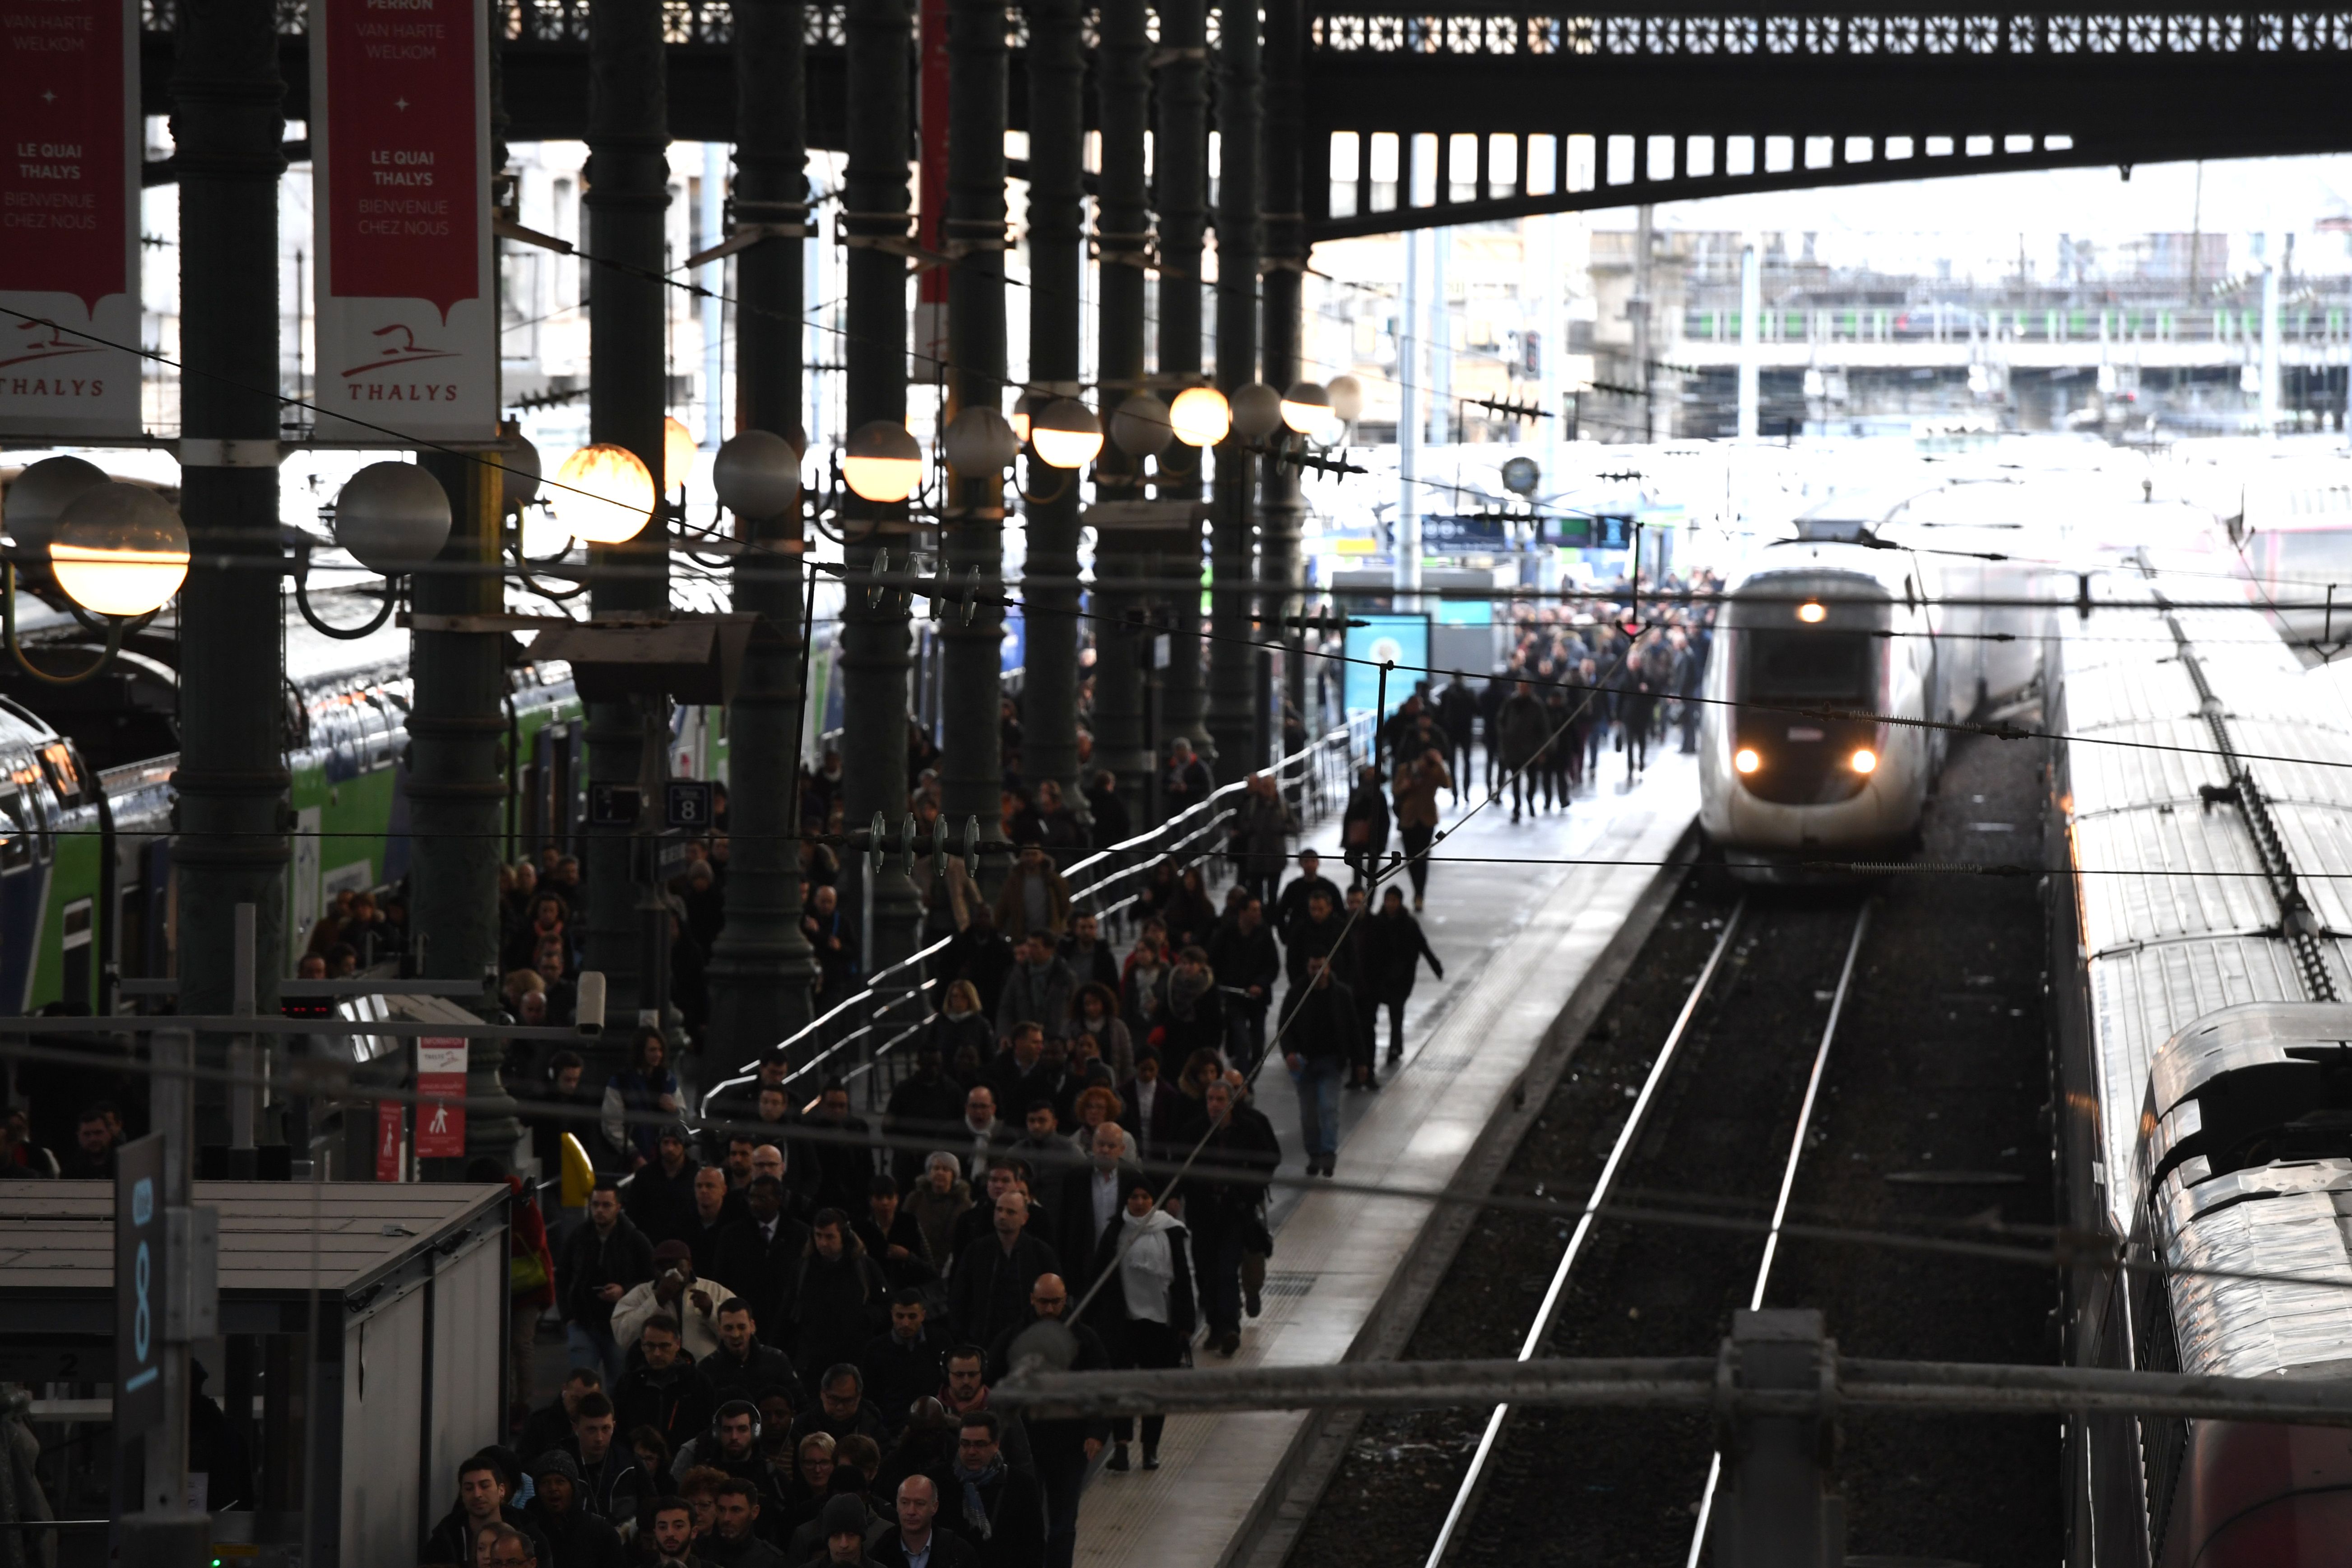 عشرات المسافرين على رصيف القطار بفرنسا